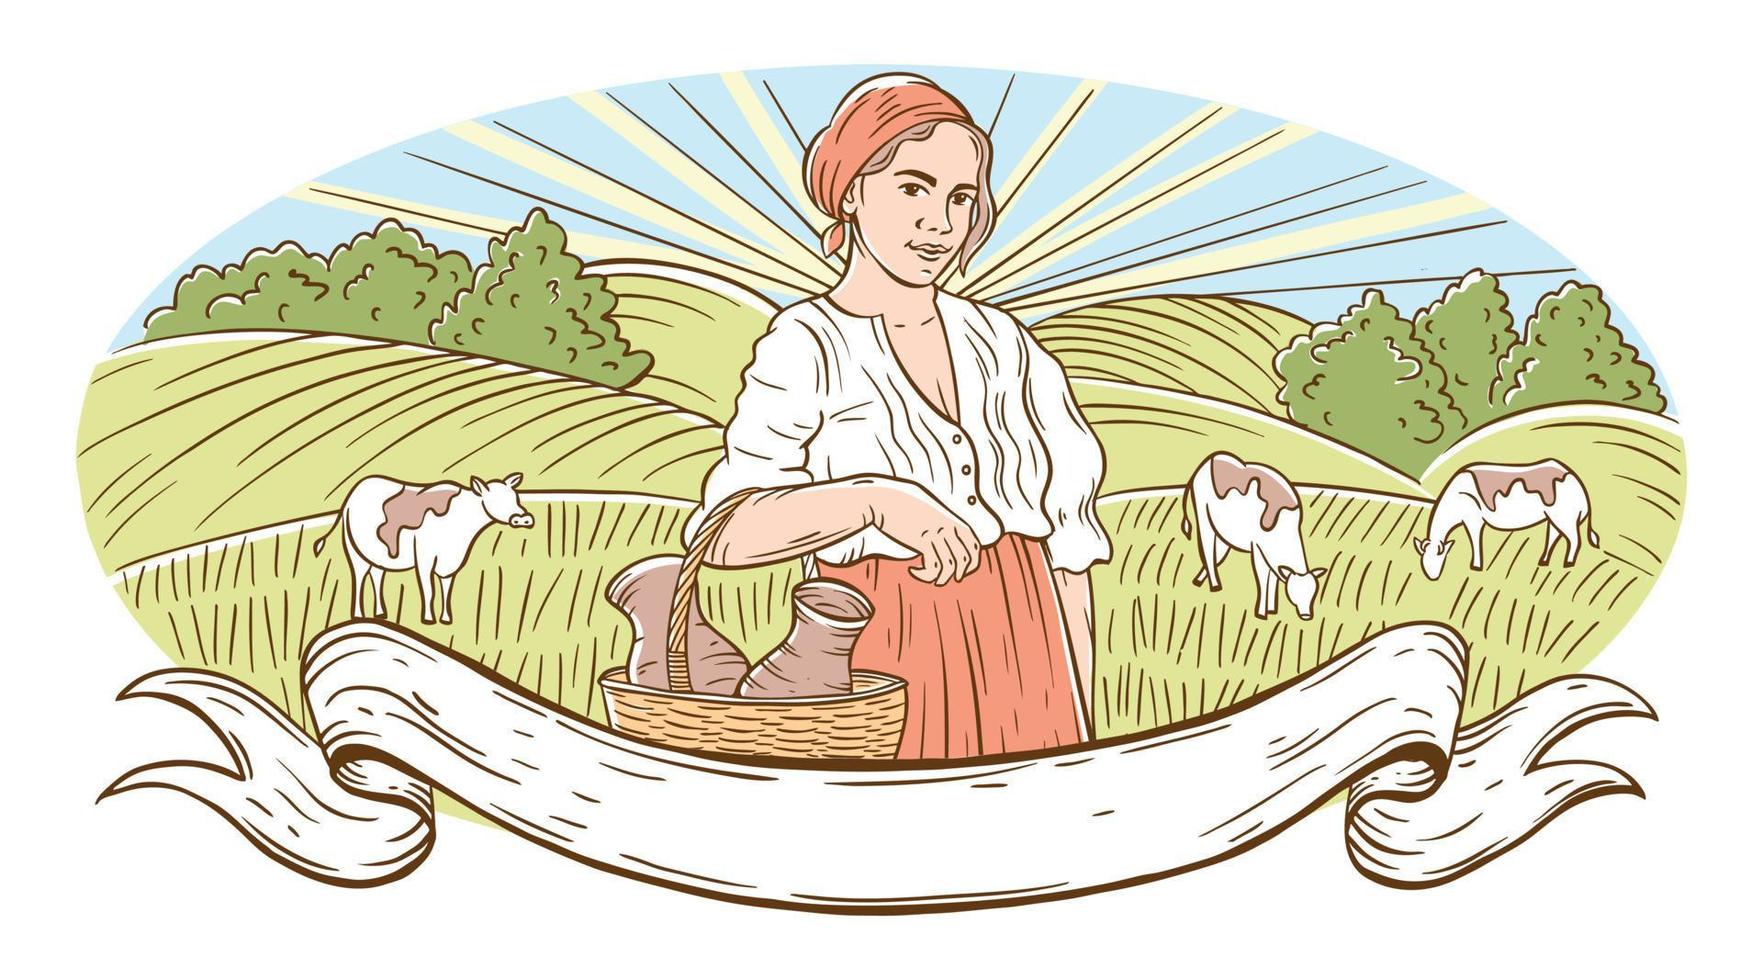 een dorp en een meisje met velden en de zon. landelijk landschap met een jong vrouw en bomen. de meisje houdt oren van tarwe of rogge. hand- gravure stijl vector